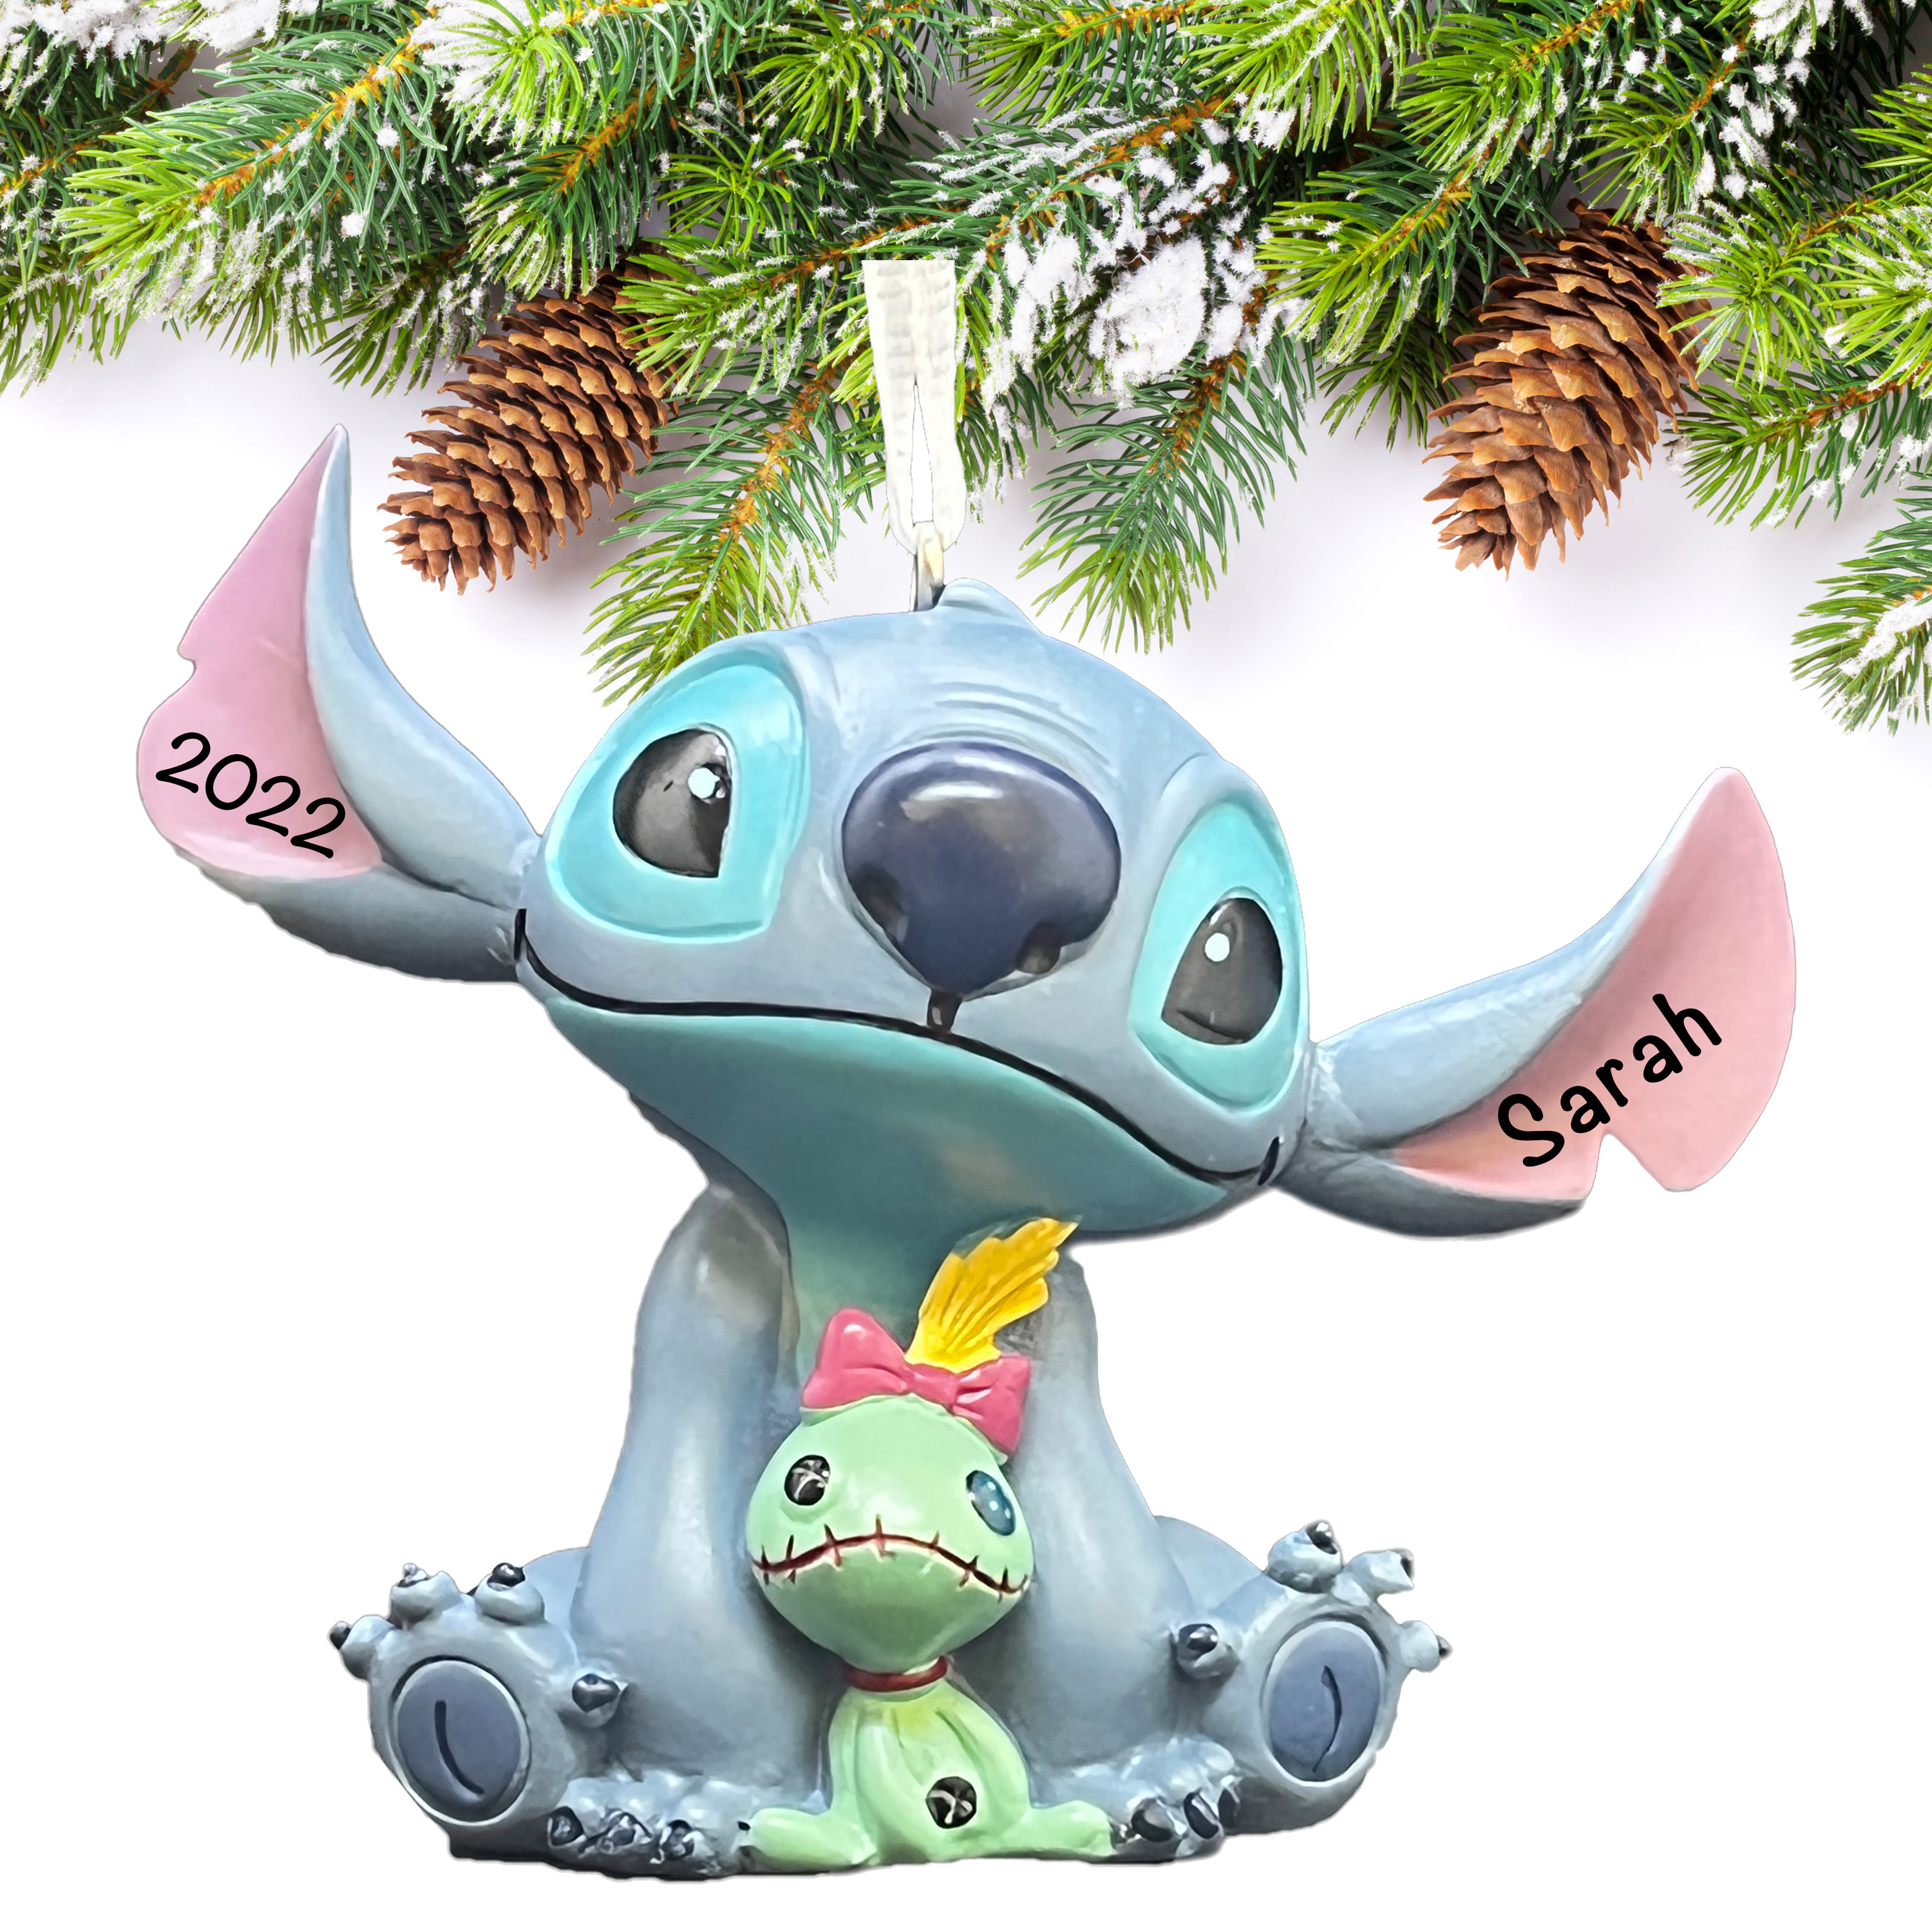 DIY Disney Christmas Ornament Stitch - EverythingMouse Guide To Disney